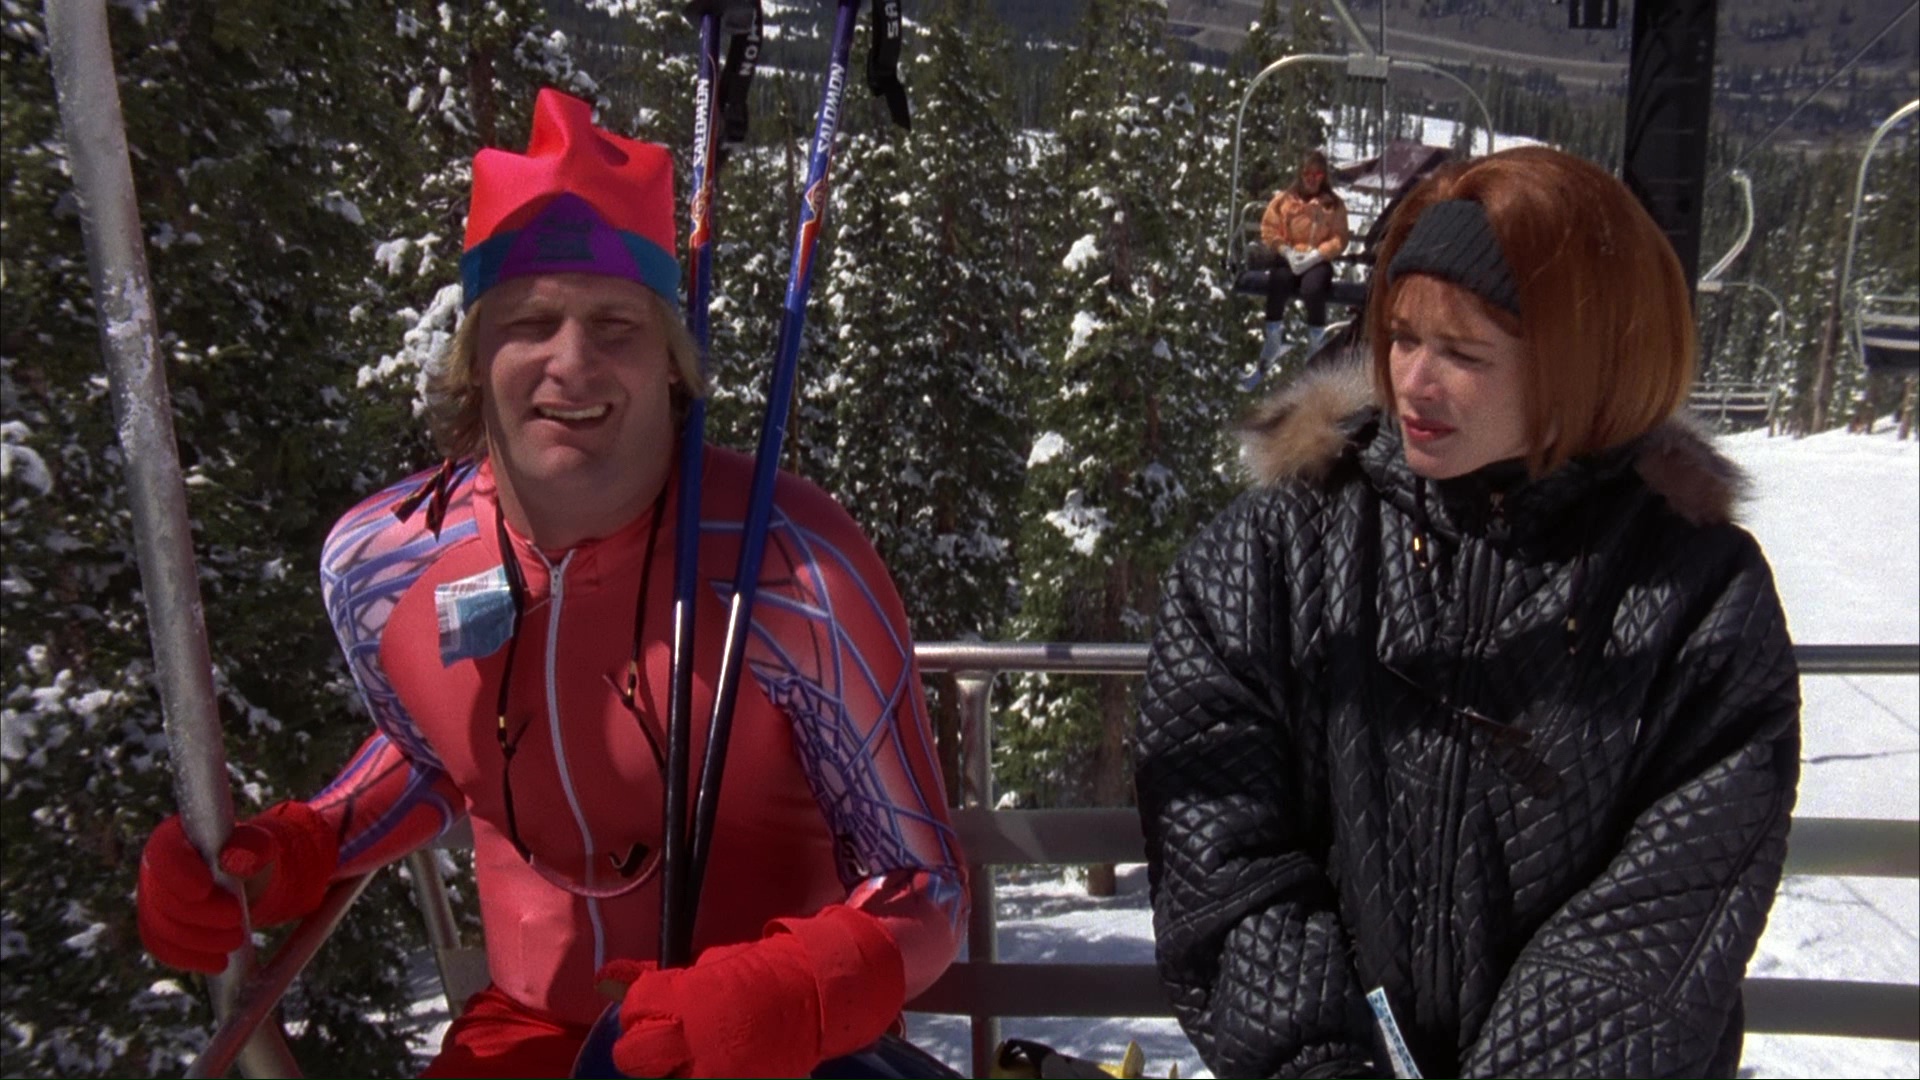 Salomon Alpine Ski Poles Used by Jeff Daniels in Dumb and Dumber (1994). 